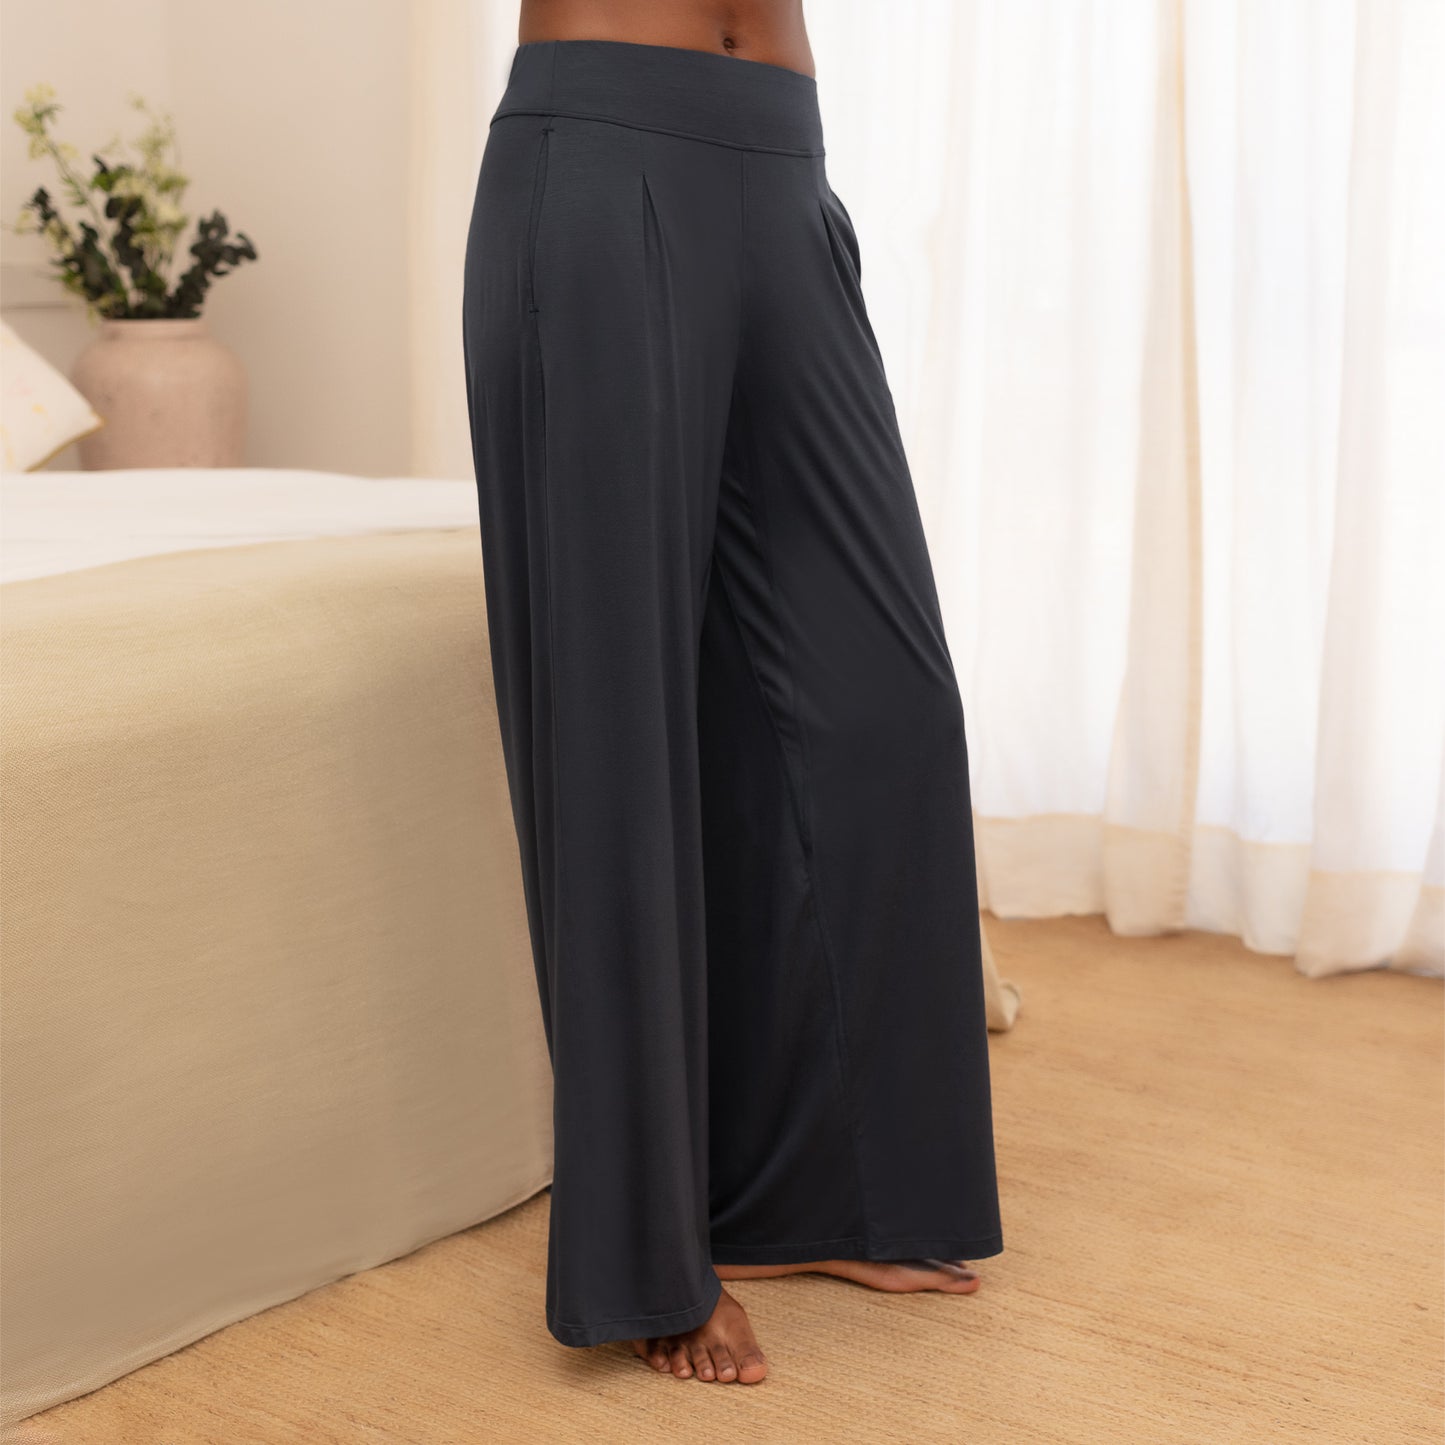 Women's cooling pajamas pants || Cool grey